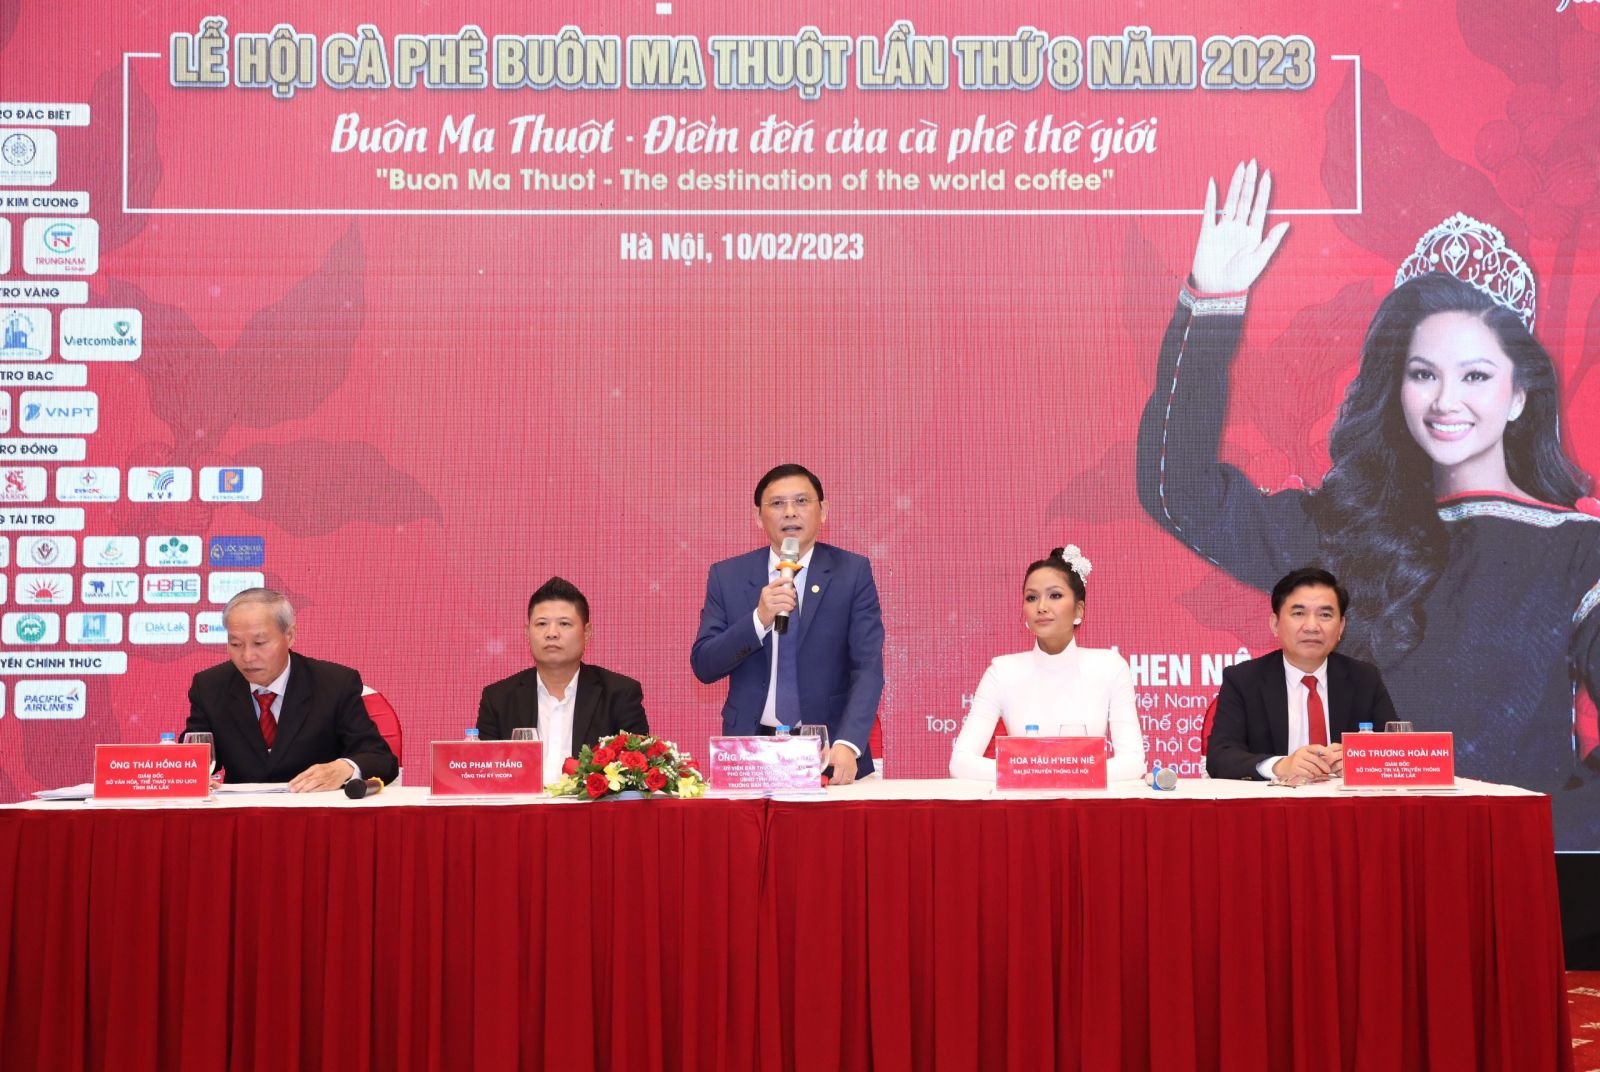 UBND tỉnh tổ chức họp báo Lễ hội cà phê Buôn Ma Thuột lần thứ 8 năm 2023 tại Hà Nội